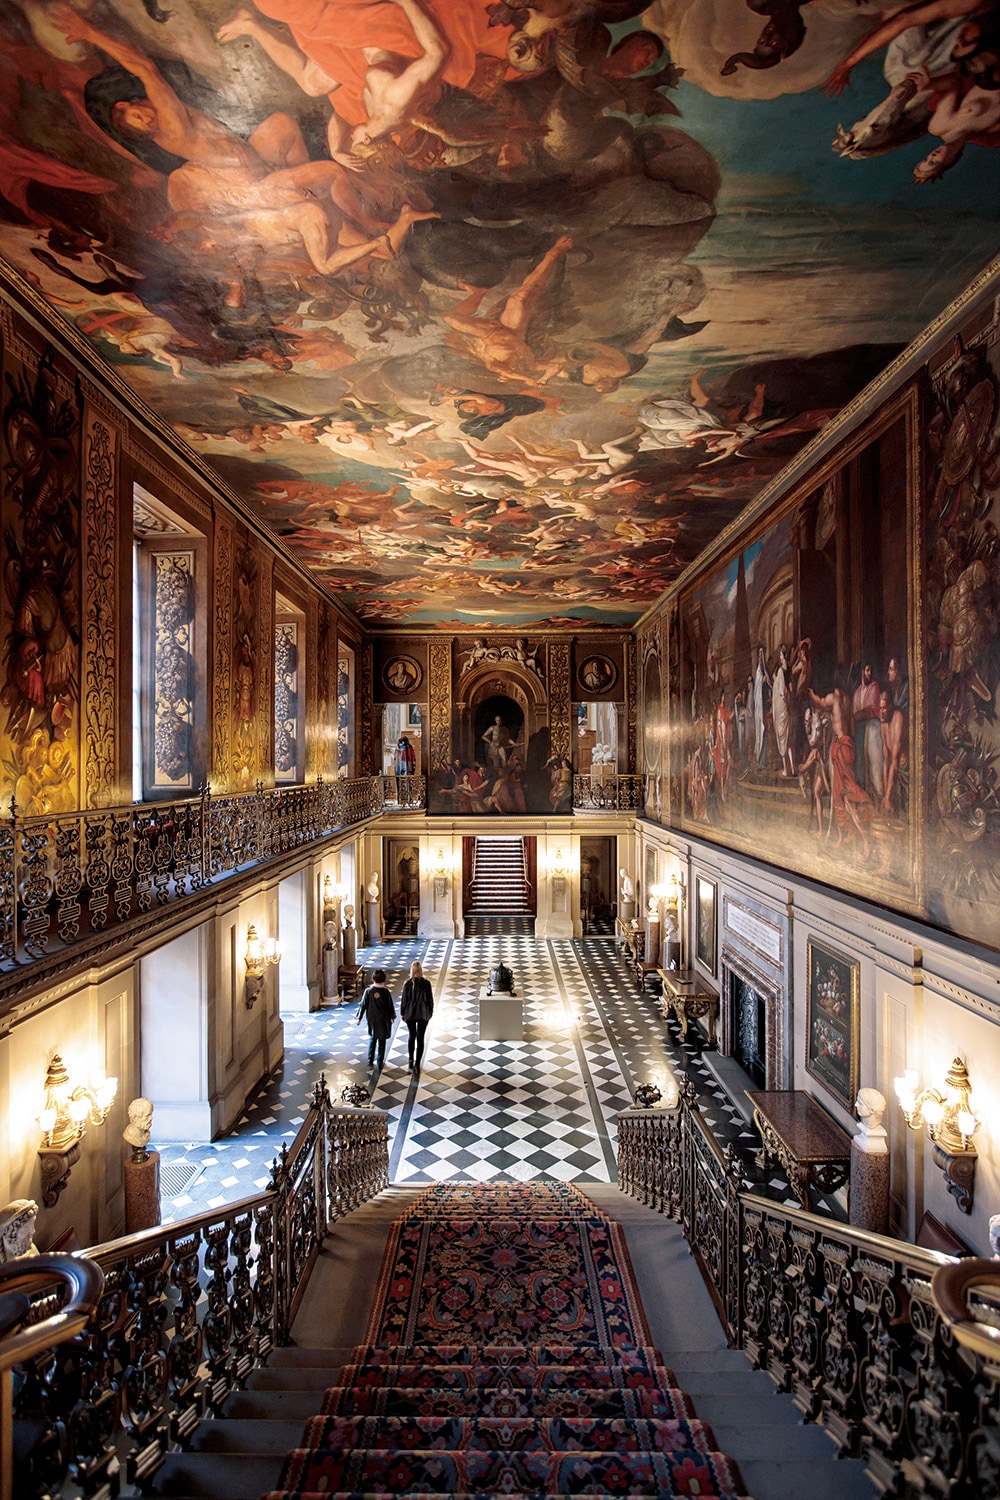 【カエサルの人生になぞらえ、王を賞賛した壮大な絵画】この館の始まりとなるペインテッド・ホールの天井と壁には、ユリウス・カエサルの人生が描かれている。これはカエサルと同様、軍人でもあったイングランド王ウィリアム3世を称えるために選ばれた題材。絵画が完成した1694年、第4代デヴォンシャー伯爵は王から公爵の爵位を与えられ、初代デヴォンシャー公爵が誕生した。ルイ・ラグエル　1692-1694年制作。